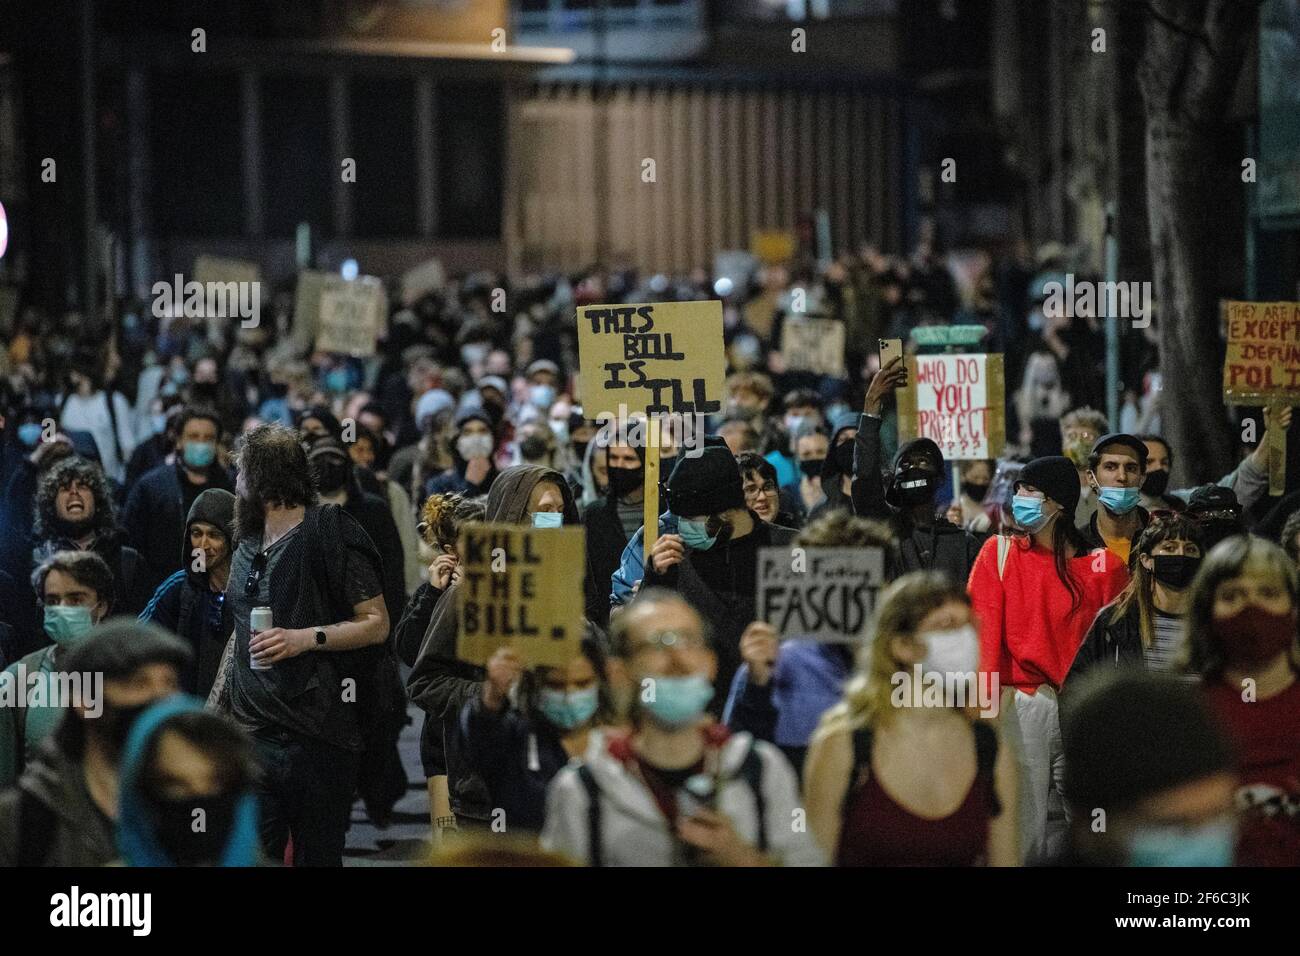 La gente participa en una protesta de "matar el proyecto de ley" en Bristol contra el proyecto de ley de policía, crimen, sentencia y tribunales. Foto de stock